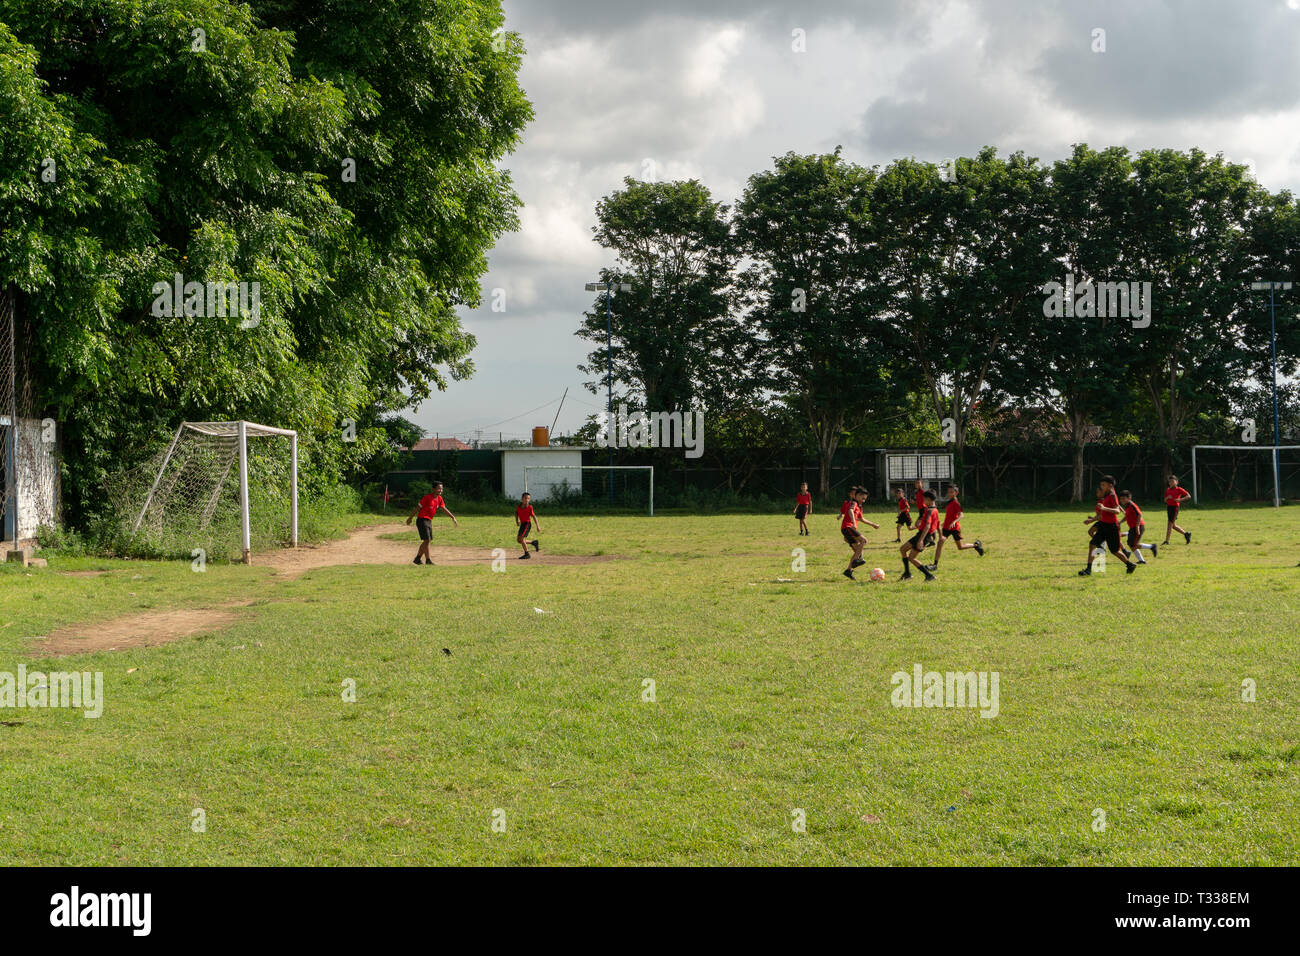 BADUNG,BALI/INDONESIA-aprile 05 2019: Elementare studente in Bali giocare a calcio o di calcio sul campo con maglia rossa. Foto Stock